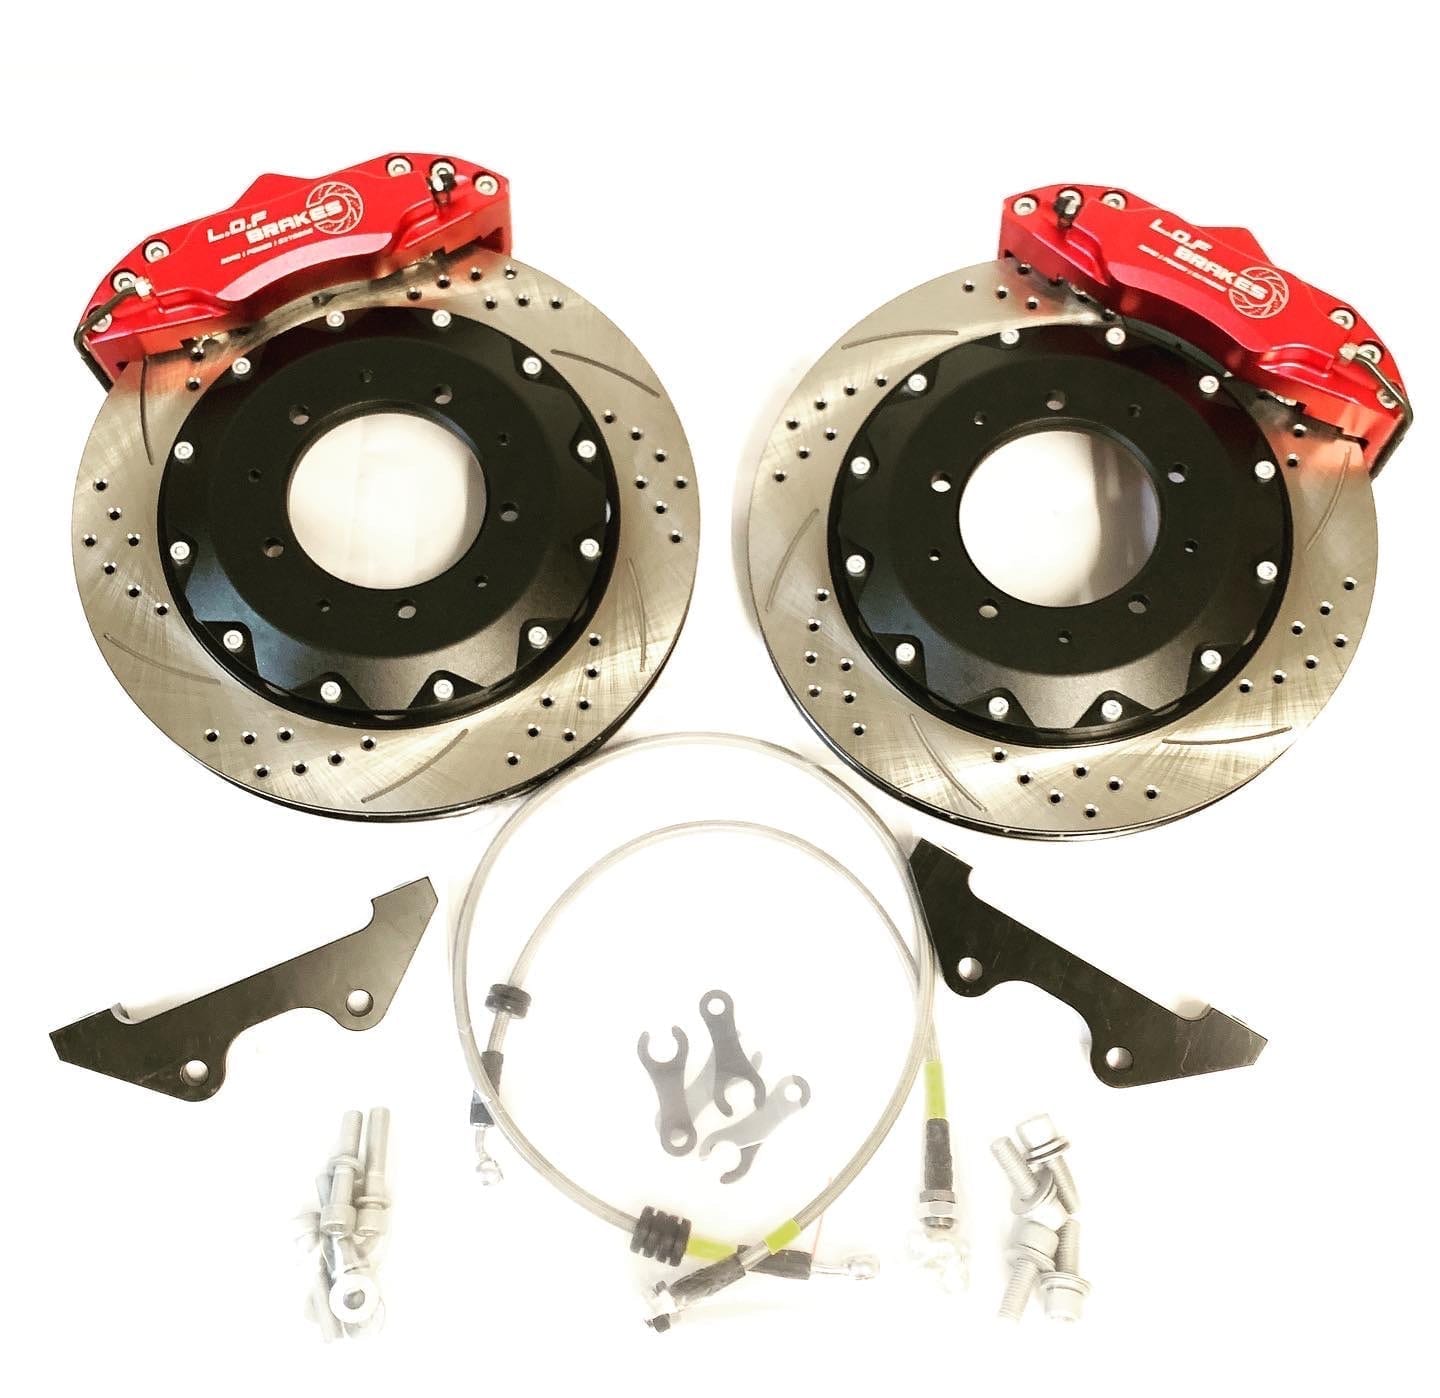 16″ Wheel EXTREMEspec brake kits now finished!